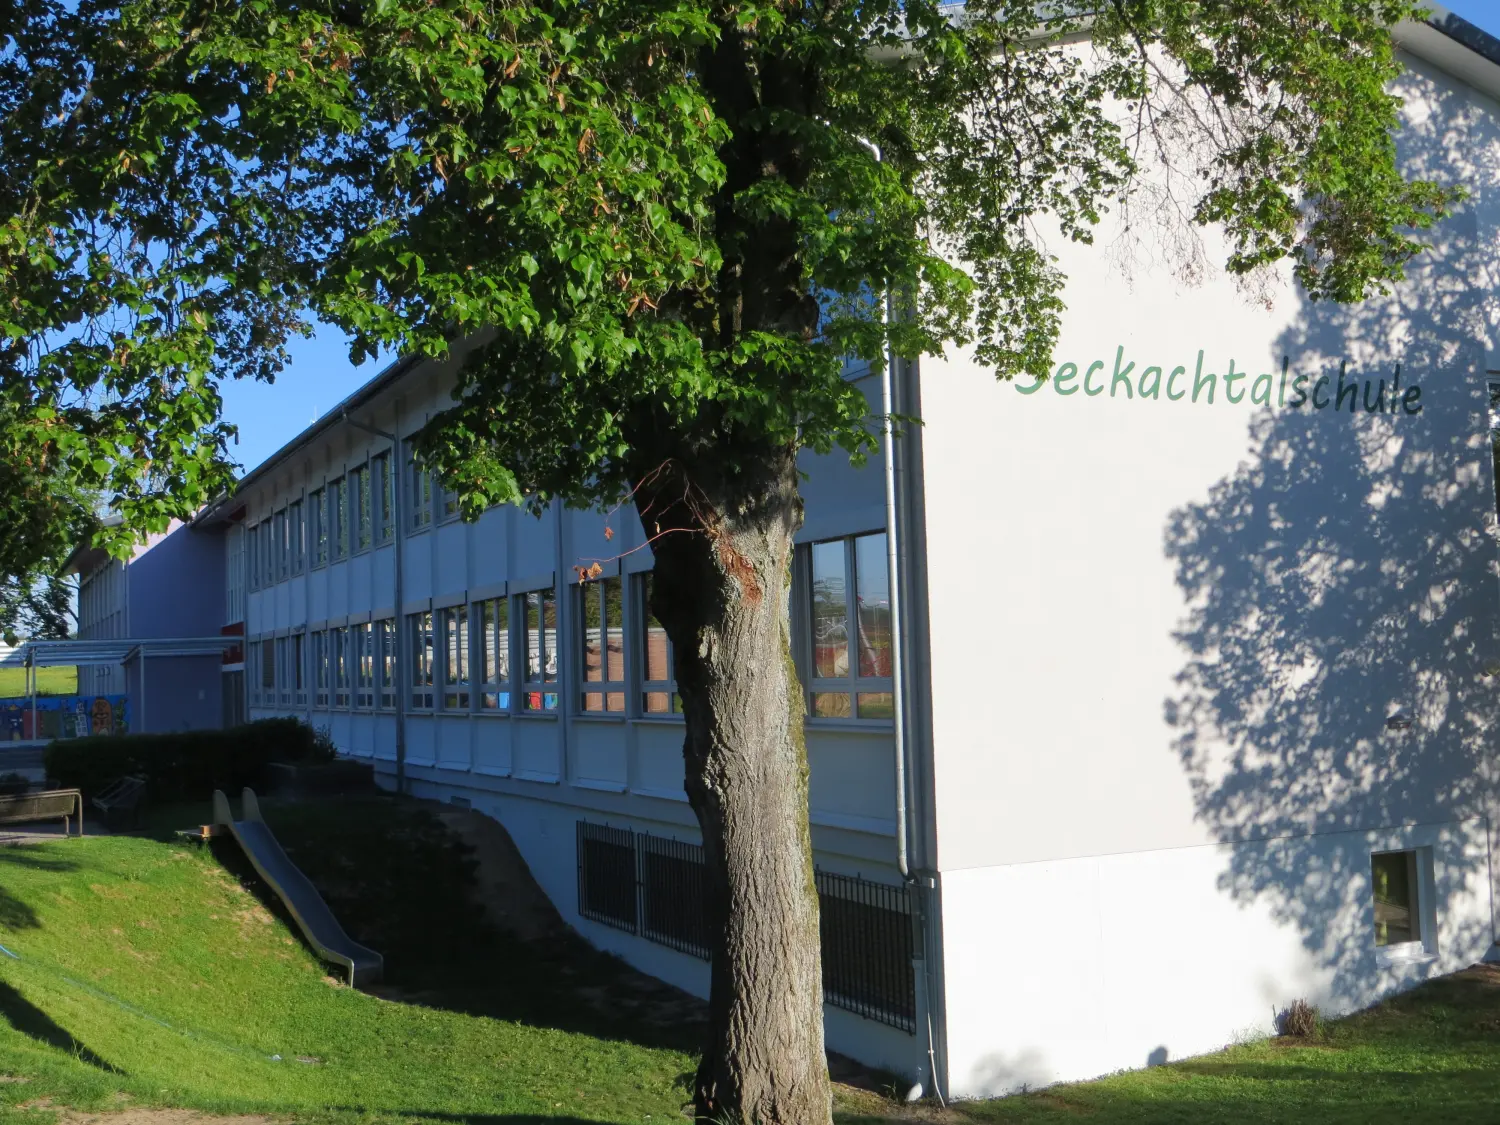 Seckachtalschule